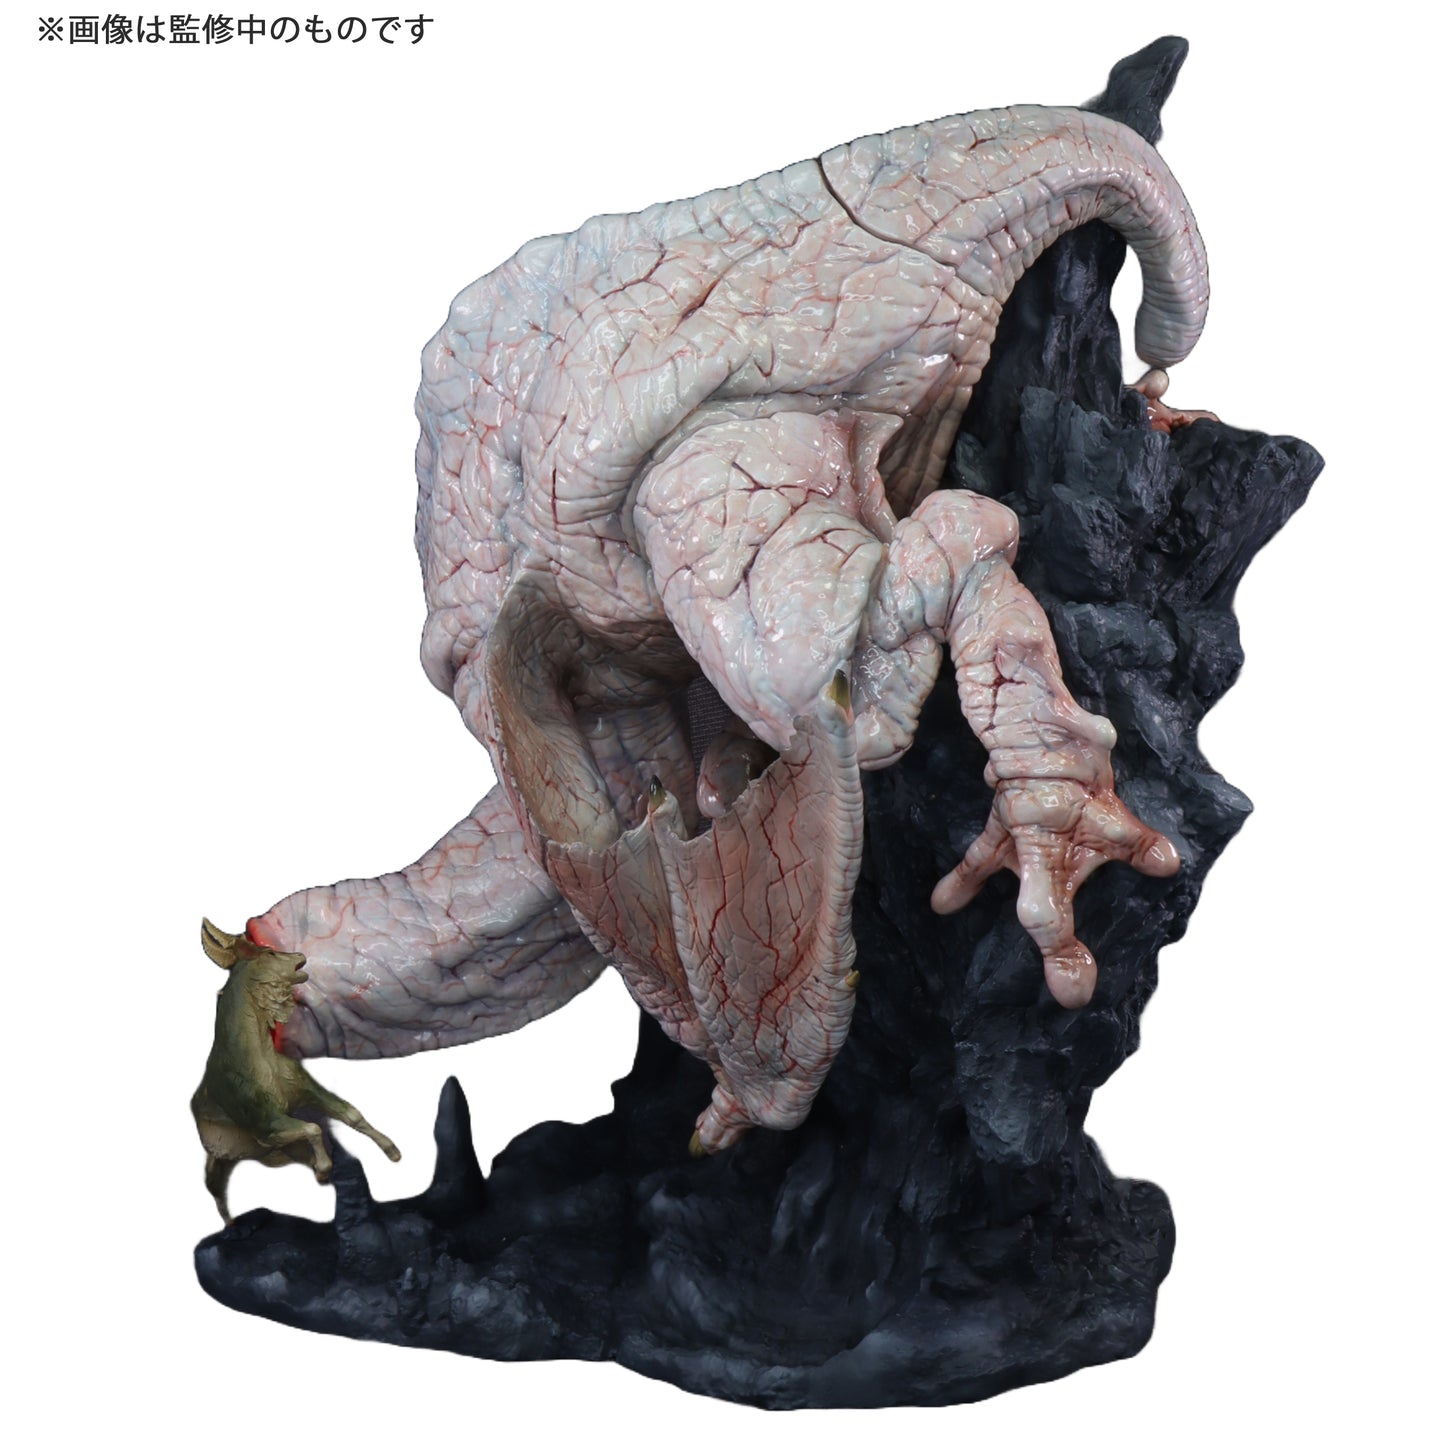 Capcom Figure Builder Creators Model "Monster Hunter" Strange Wyvern Khezu